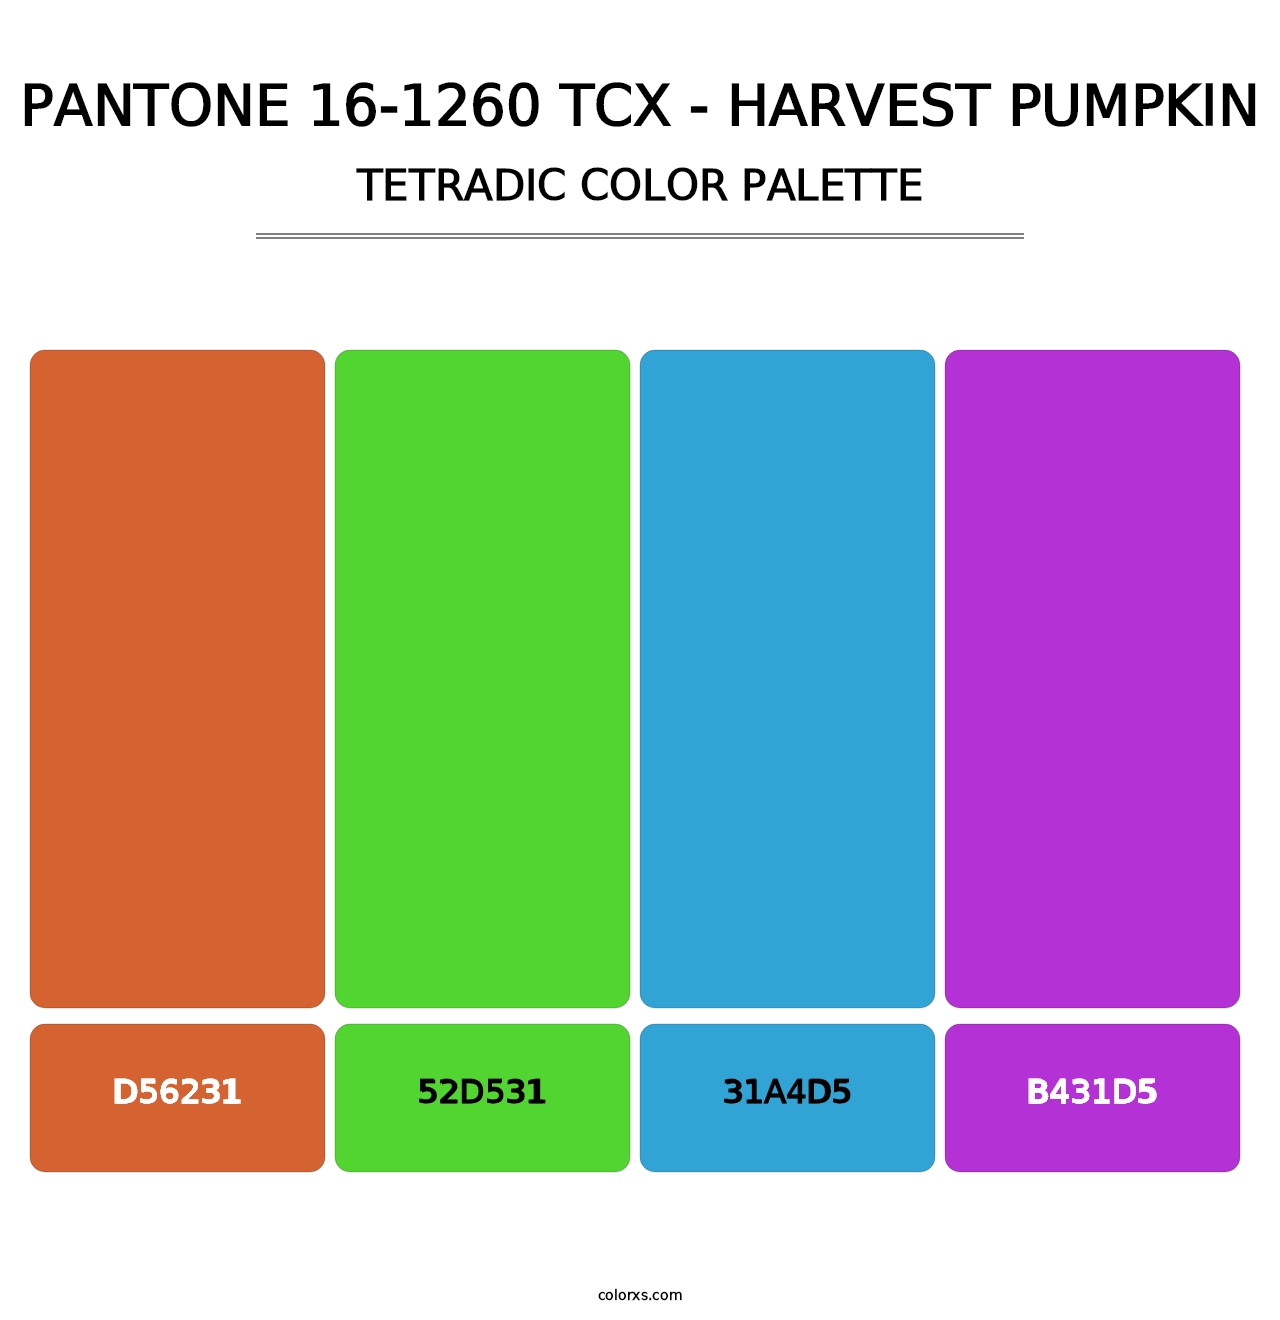 PANTONE 16-1260 TCX - Harvest Pumpkin - Tetradic Color Palette